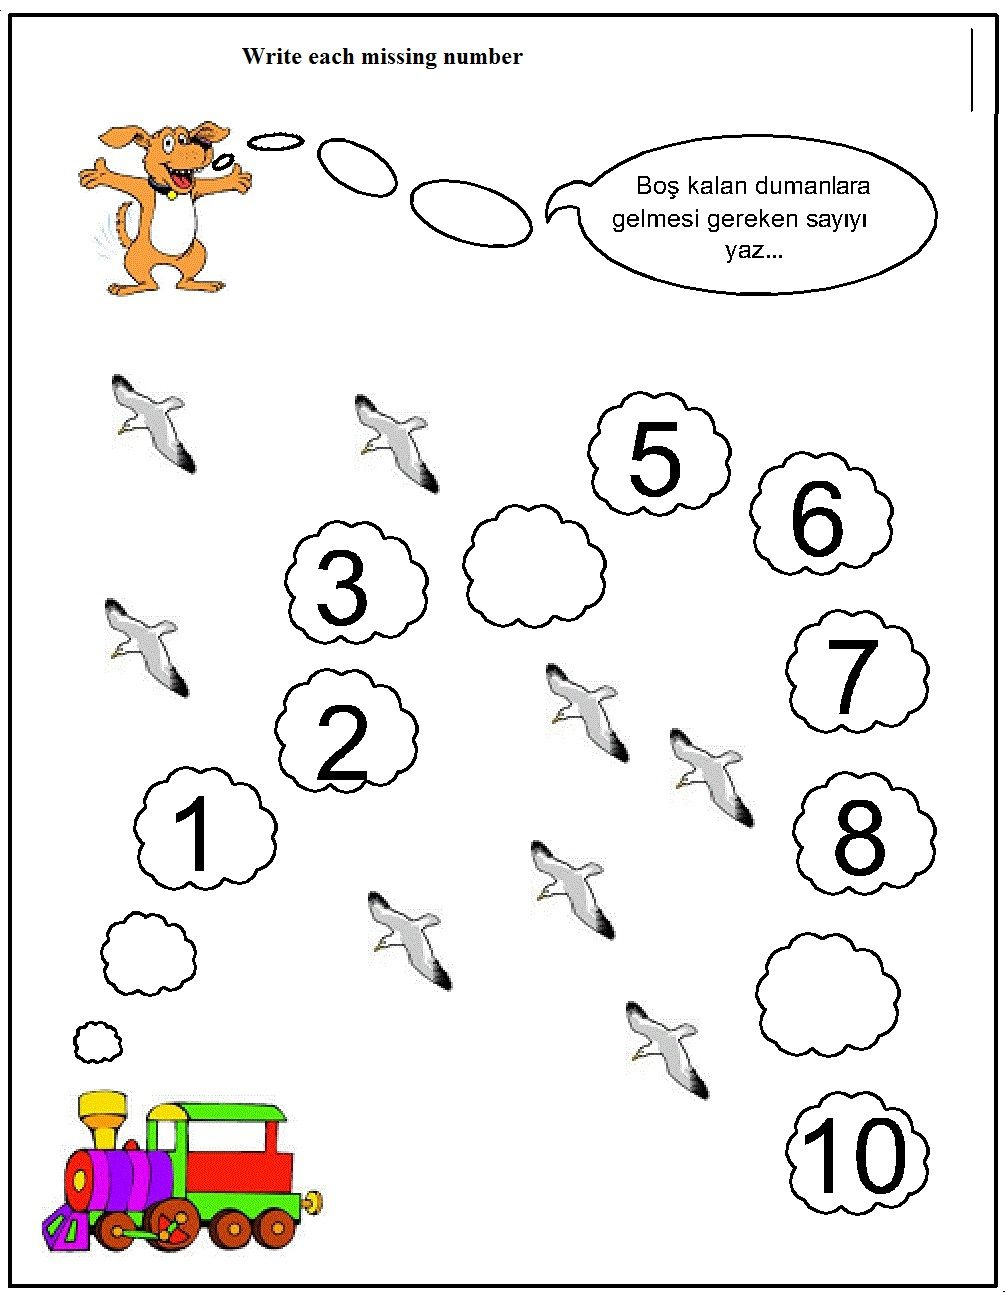 Missing Number Worksheet For Kids (14) | Crafts And